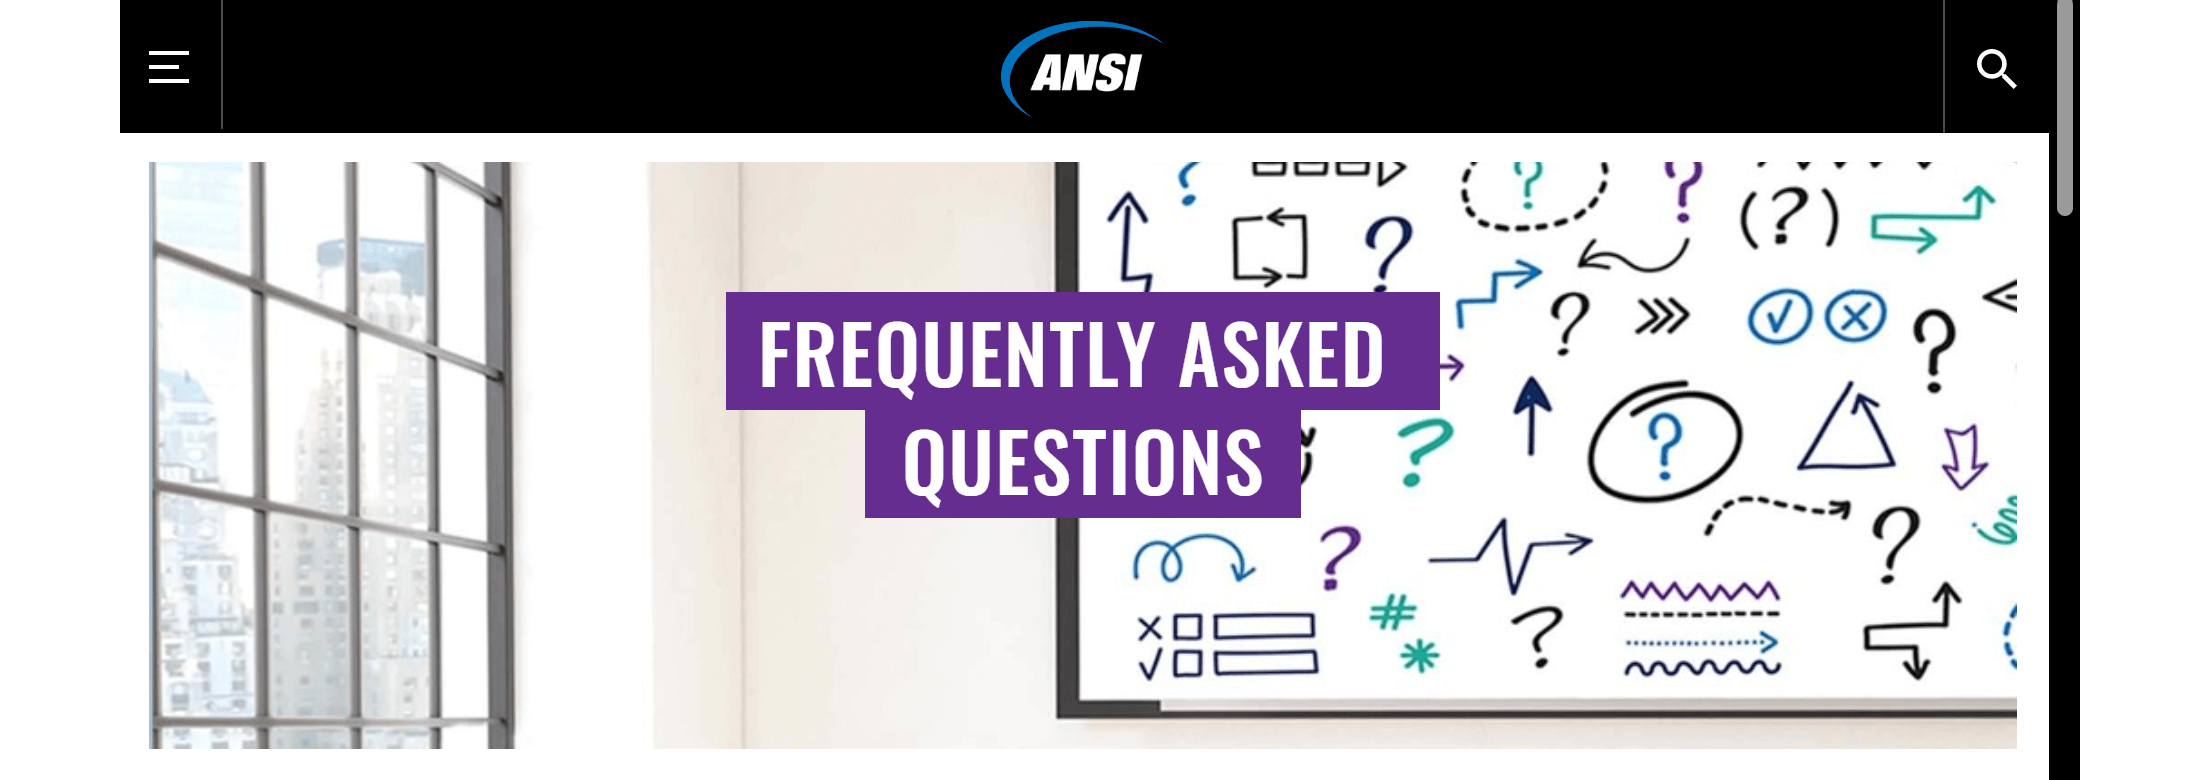 ANSI FAQ page